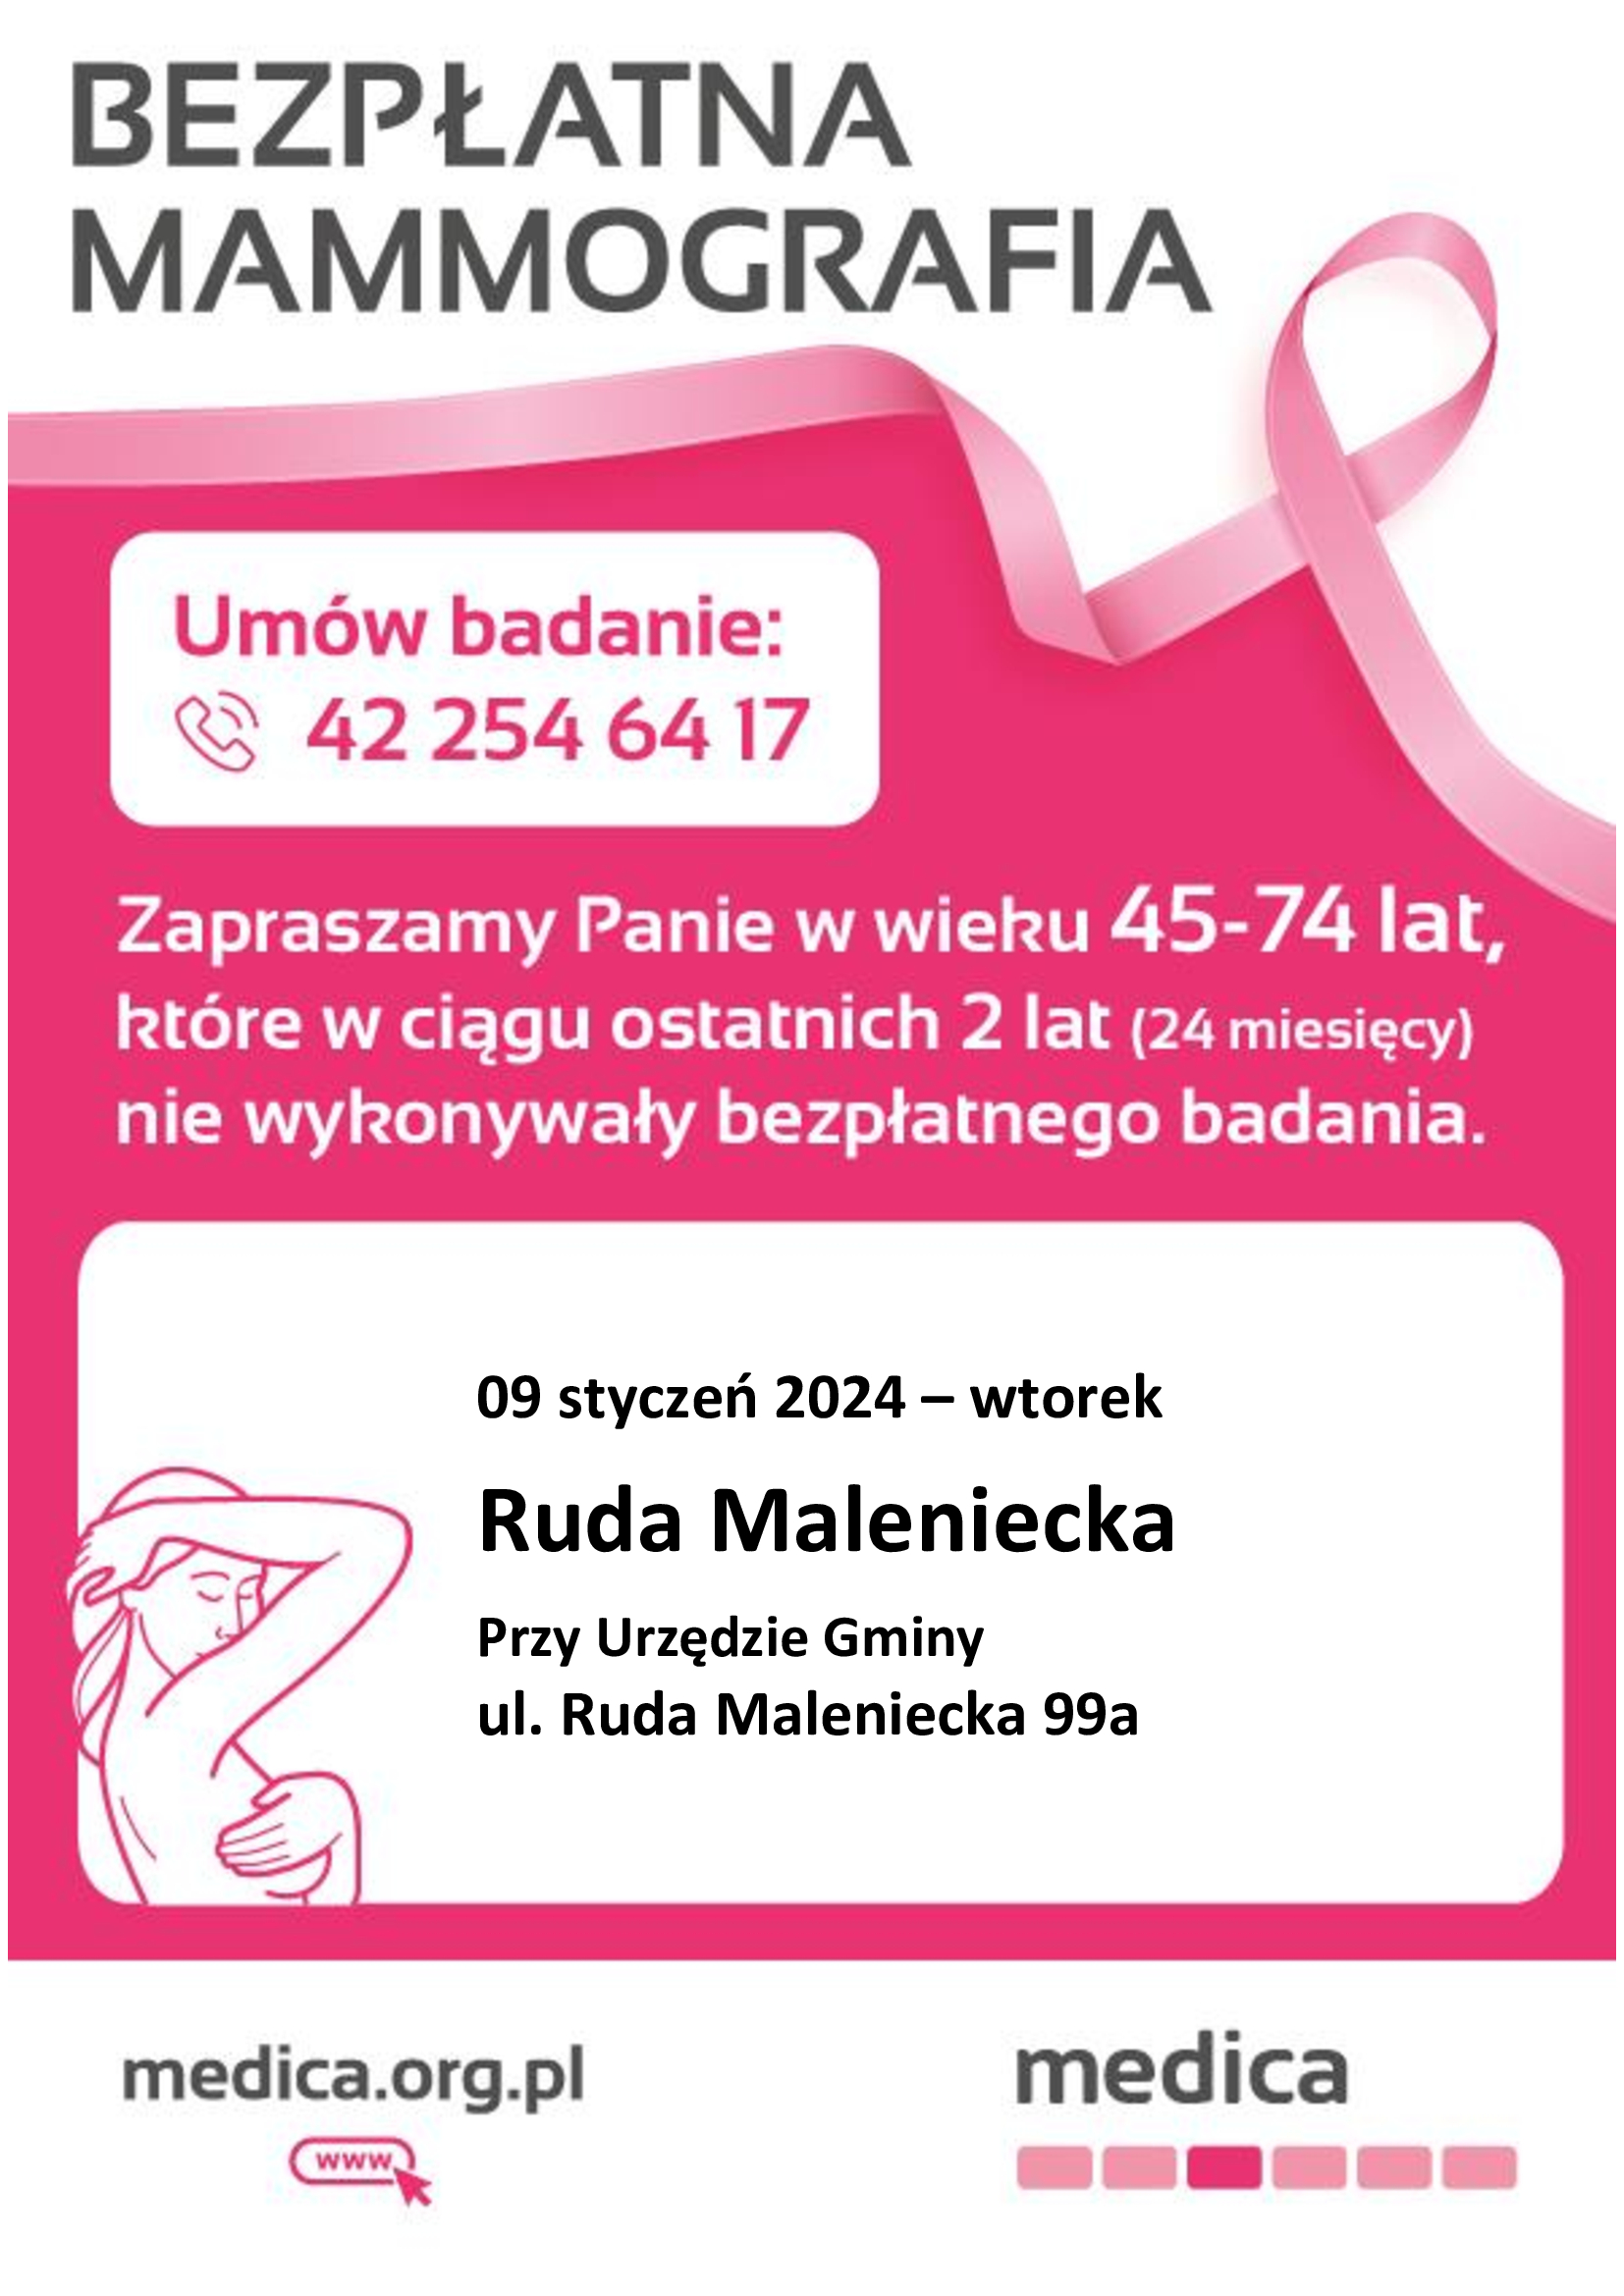 Plakat informacyjny z zaproszenie na bezpłatne badanie mammograficzne, które odbędzie się 9 stycznia 2024 roku - wtorek przy Urzędzie Gminy w Rudzie Malenieckiej. Ruda Maleniecka 99A. Zaproszenie dotyczy Pań w wieku 45-74 lat, które w ciągu ostatnich 2 lat nie wykonywały bezpłatnego badania. Telefon, pod którym można umówić badanie: 42 254 64 17.